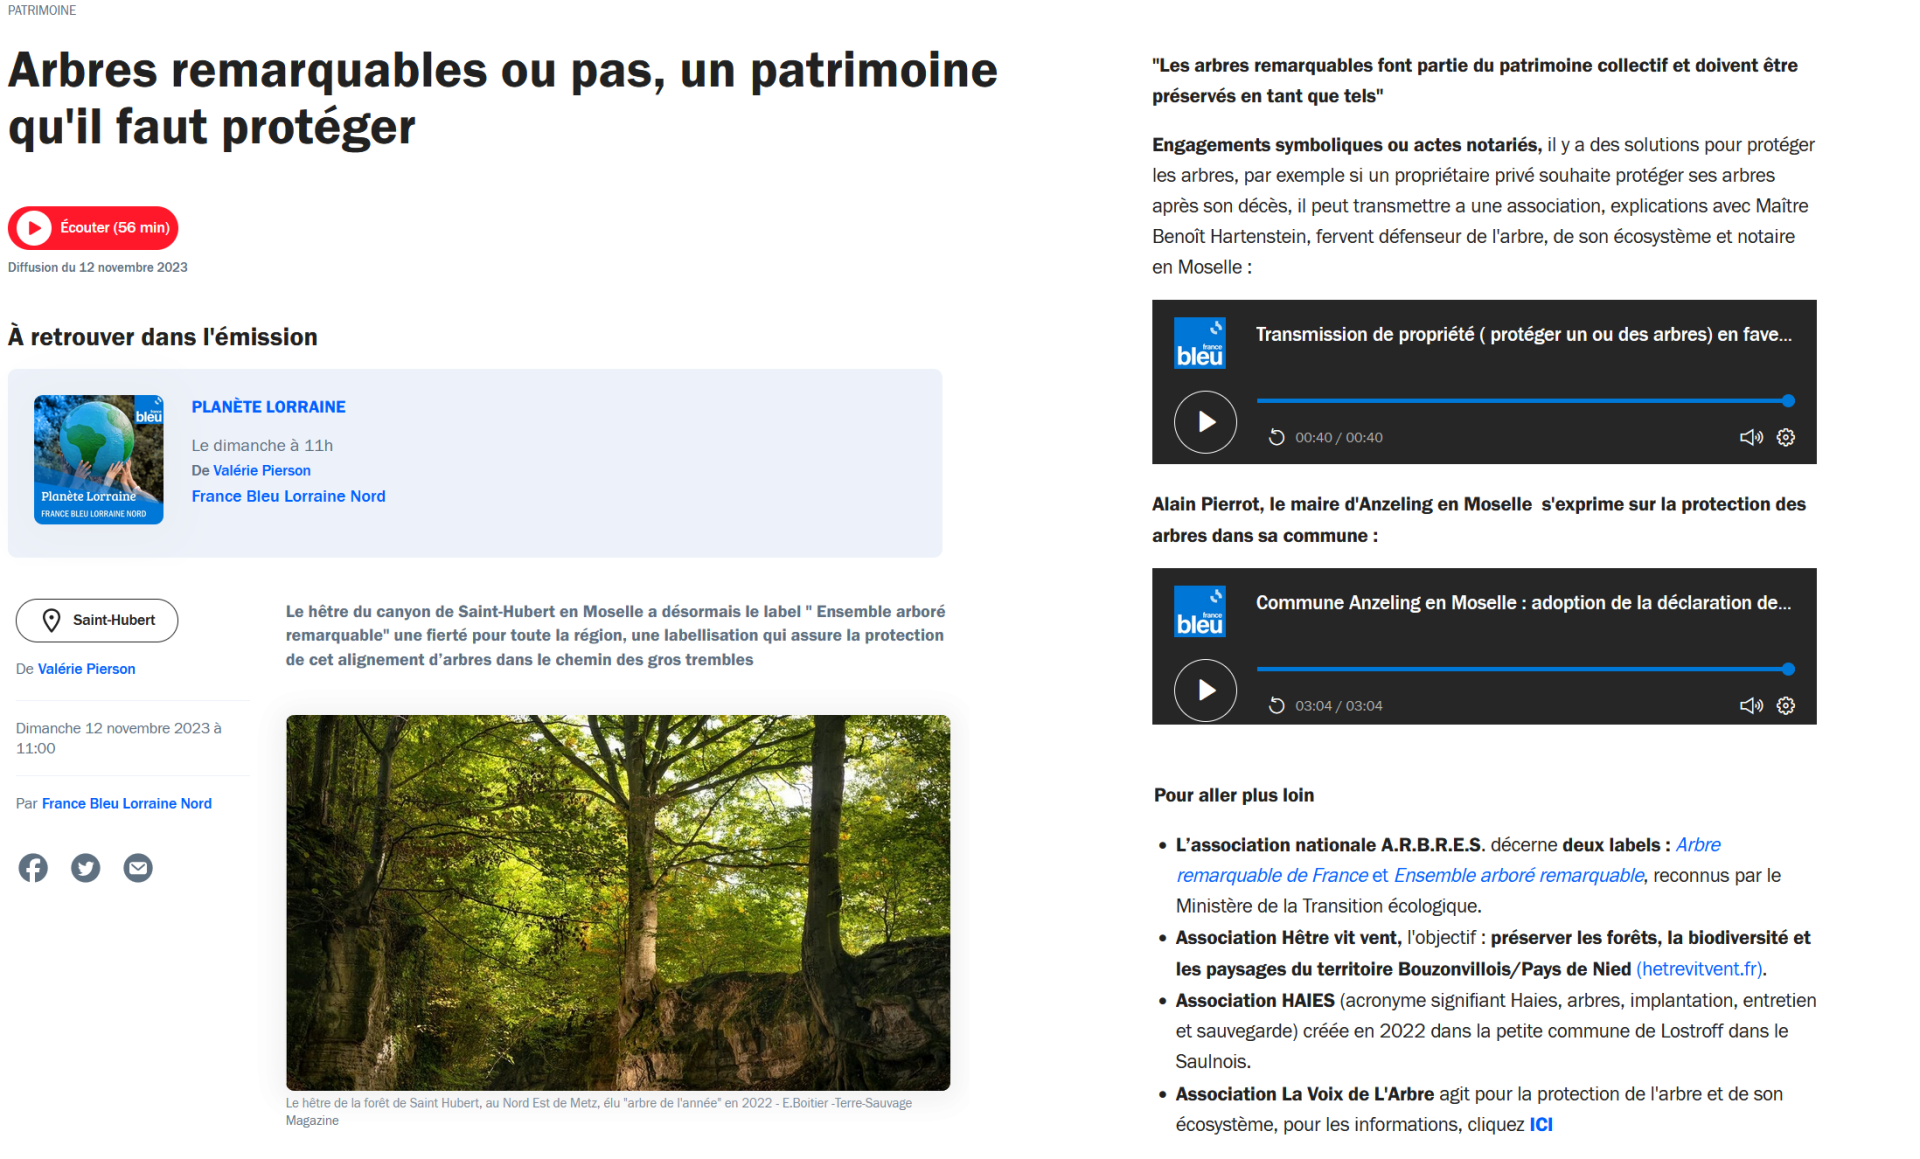 France bleu planete nature 12 novembre 2023 protection des arbres